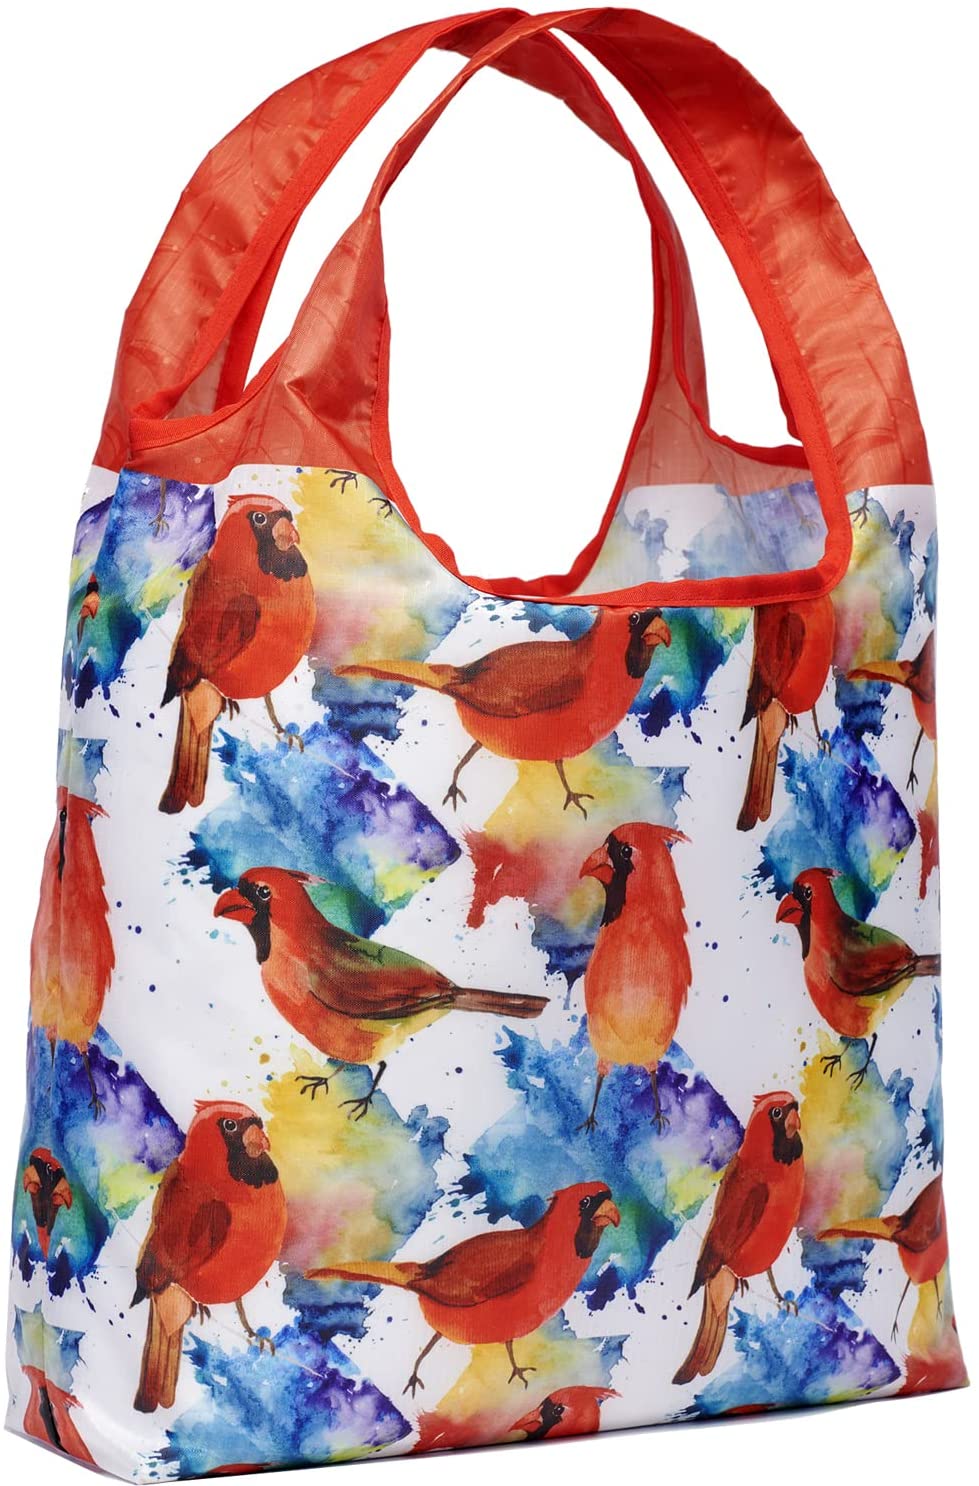 O-WITZ Reusable Shopping Bag - Bird Cardinals Multicolor